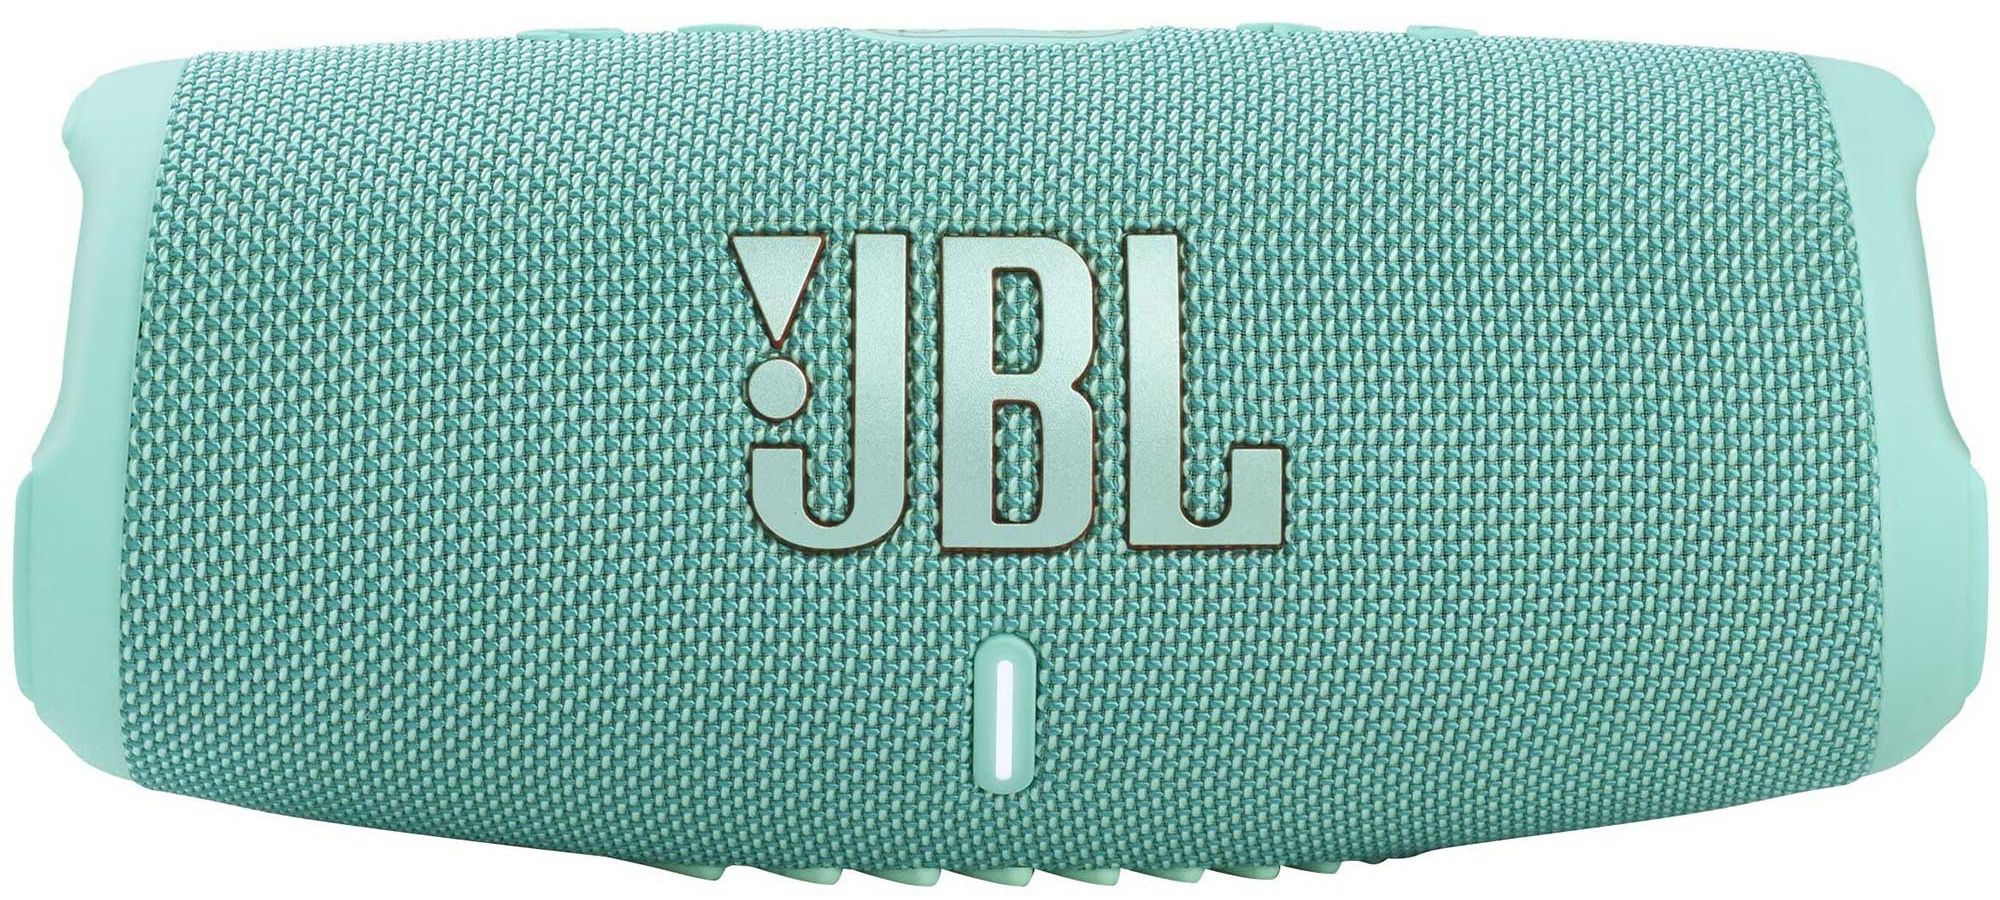 Портативная акустика JBL Charge 5 Teal портативная акустика jbl charge 5 black